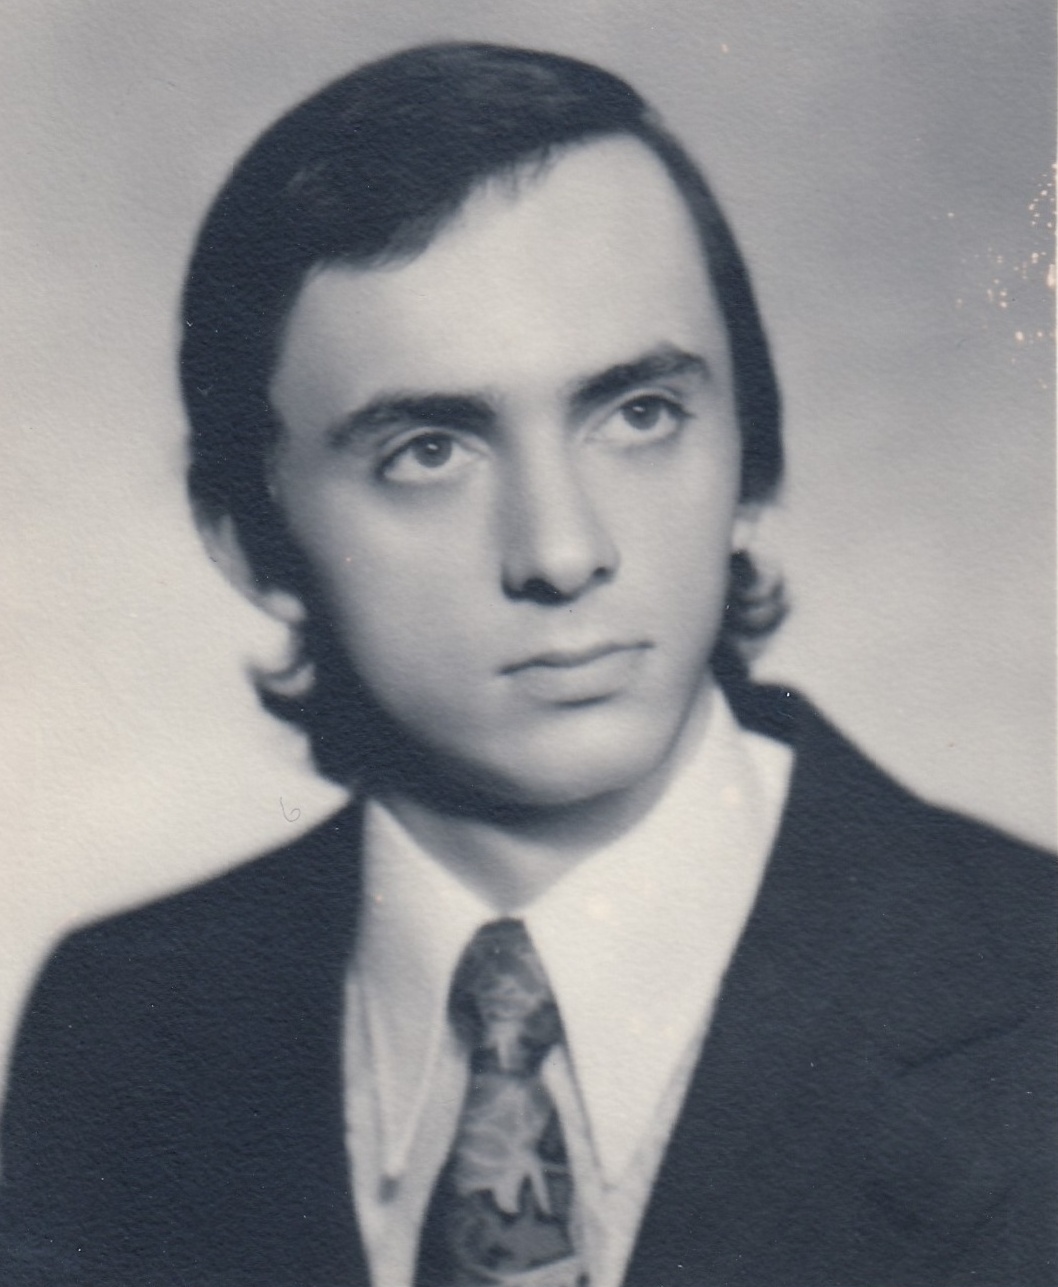 Libor Grubhoffer na fotce z maturitního tabla gymnázia v Poličce, 1976